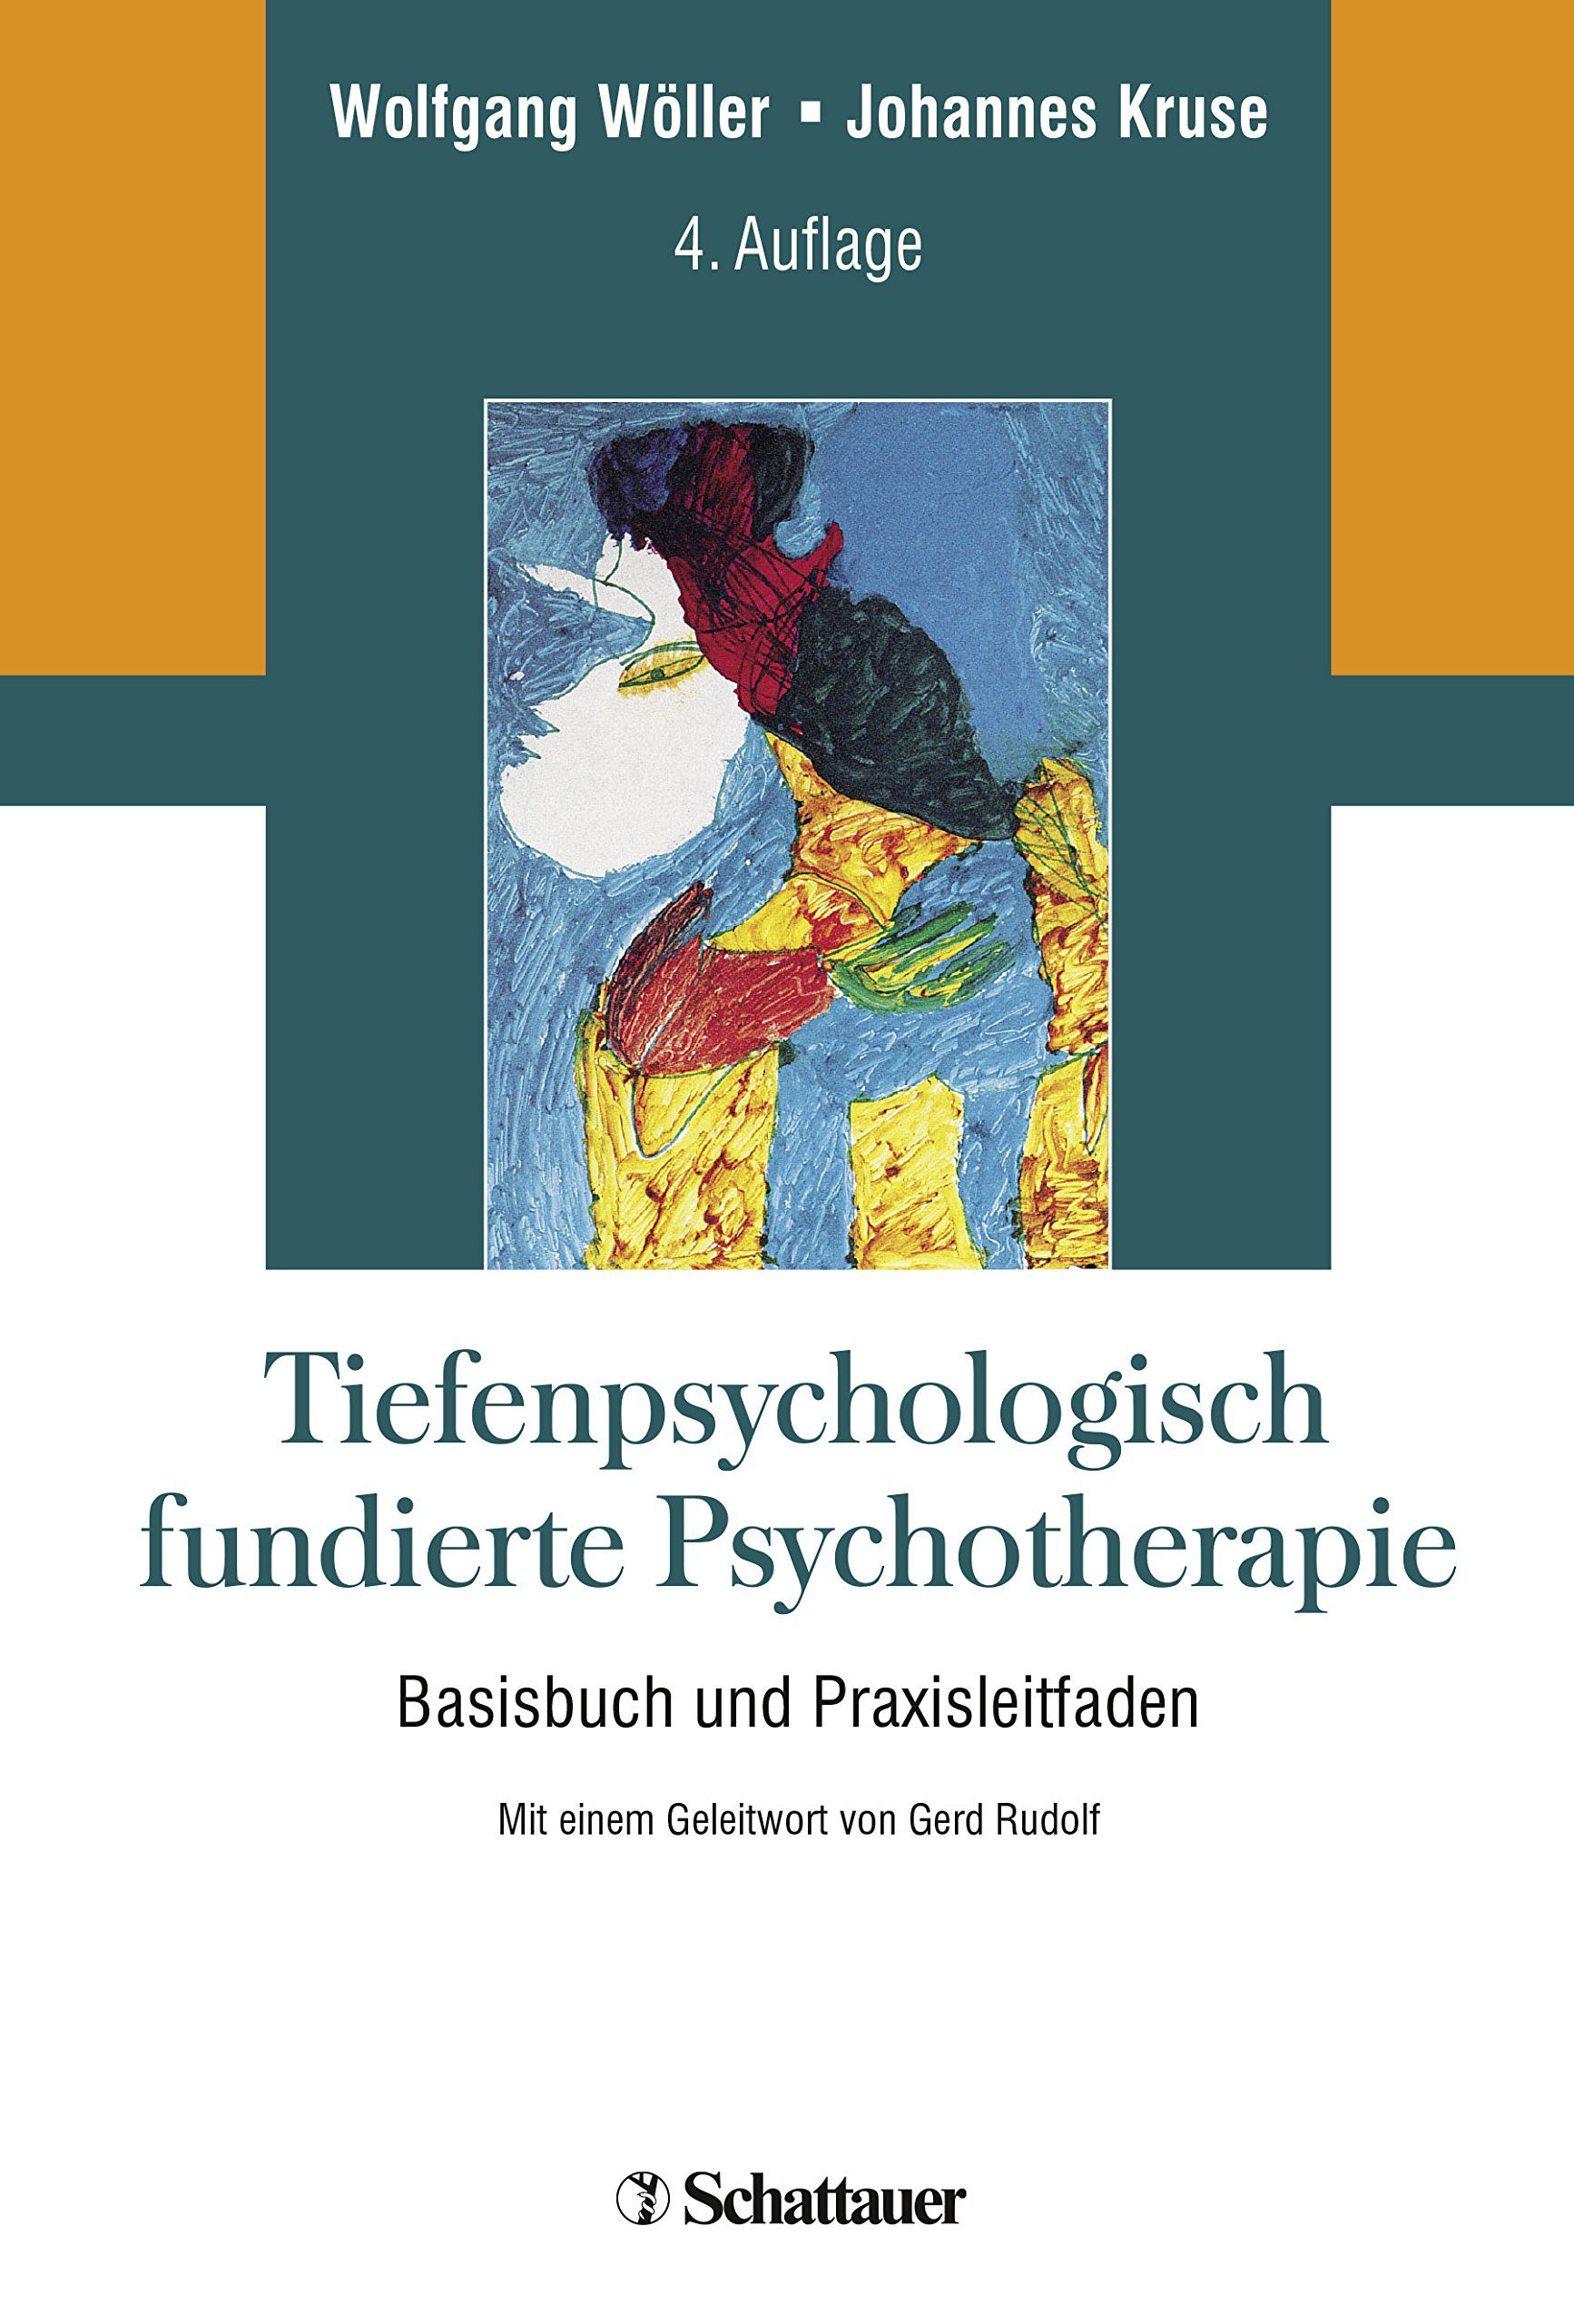 Buch: Tiefenpsychologisch fundierte Psychotherapie (Amazon)